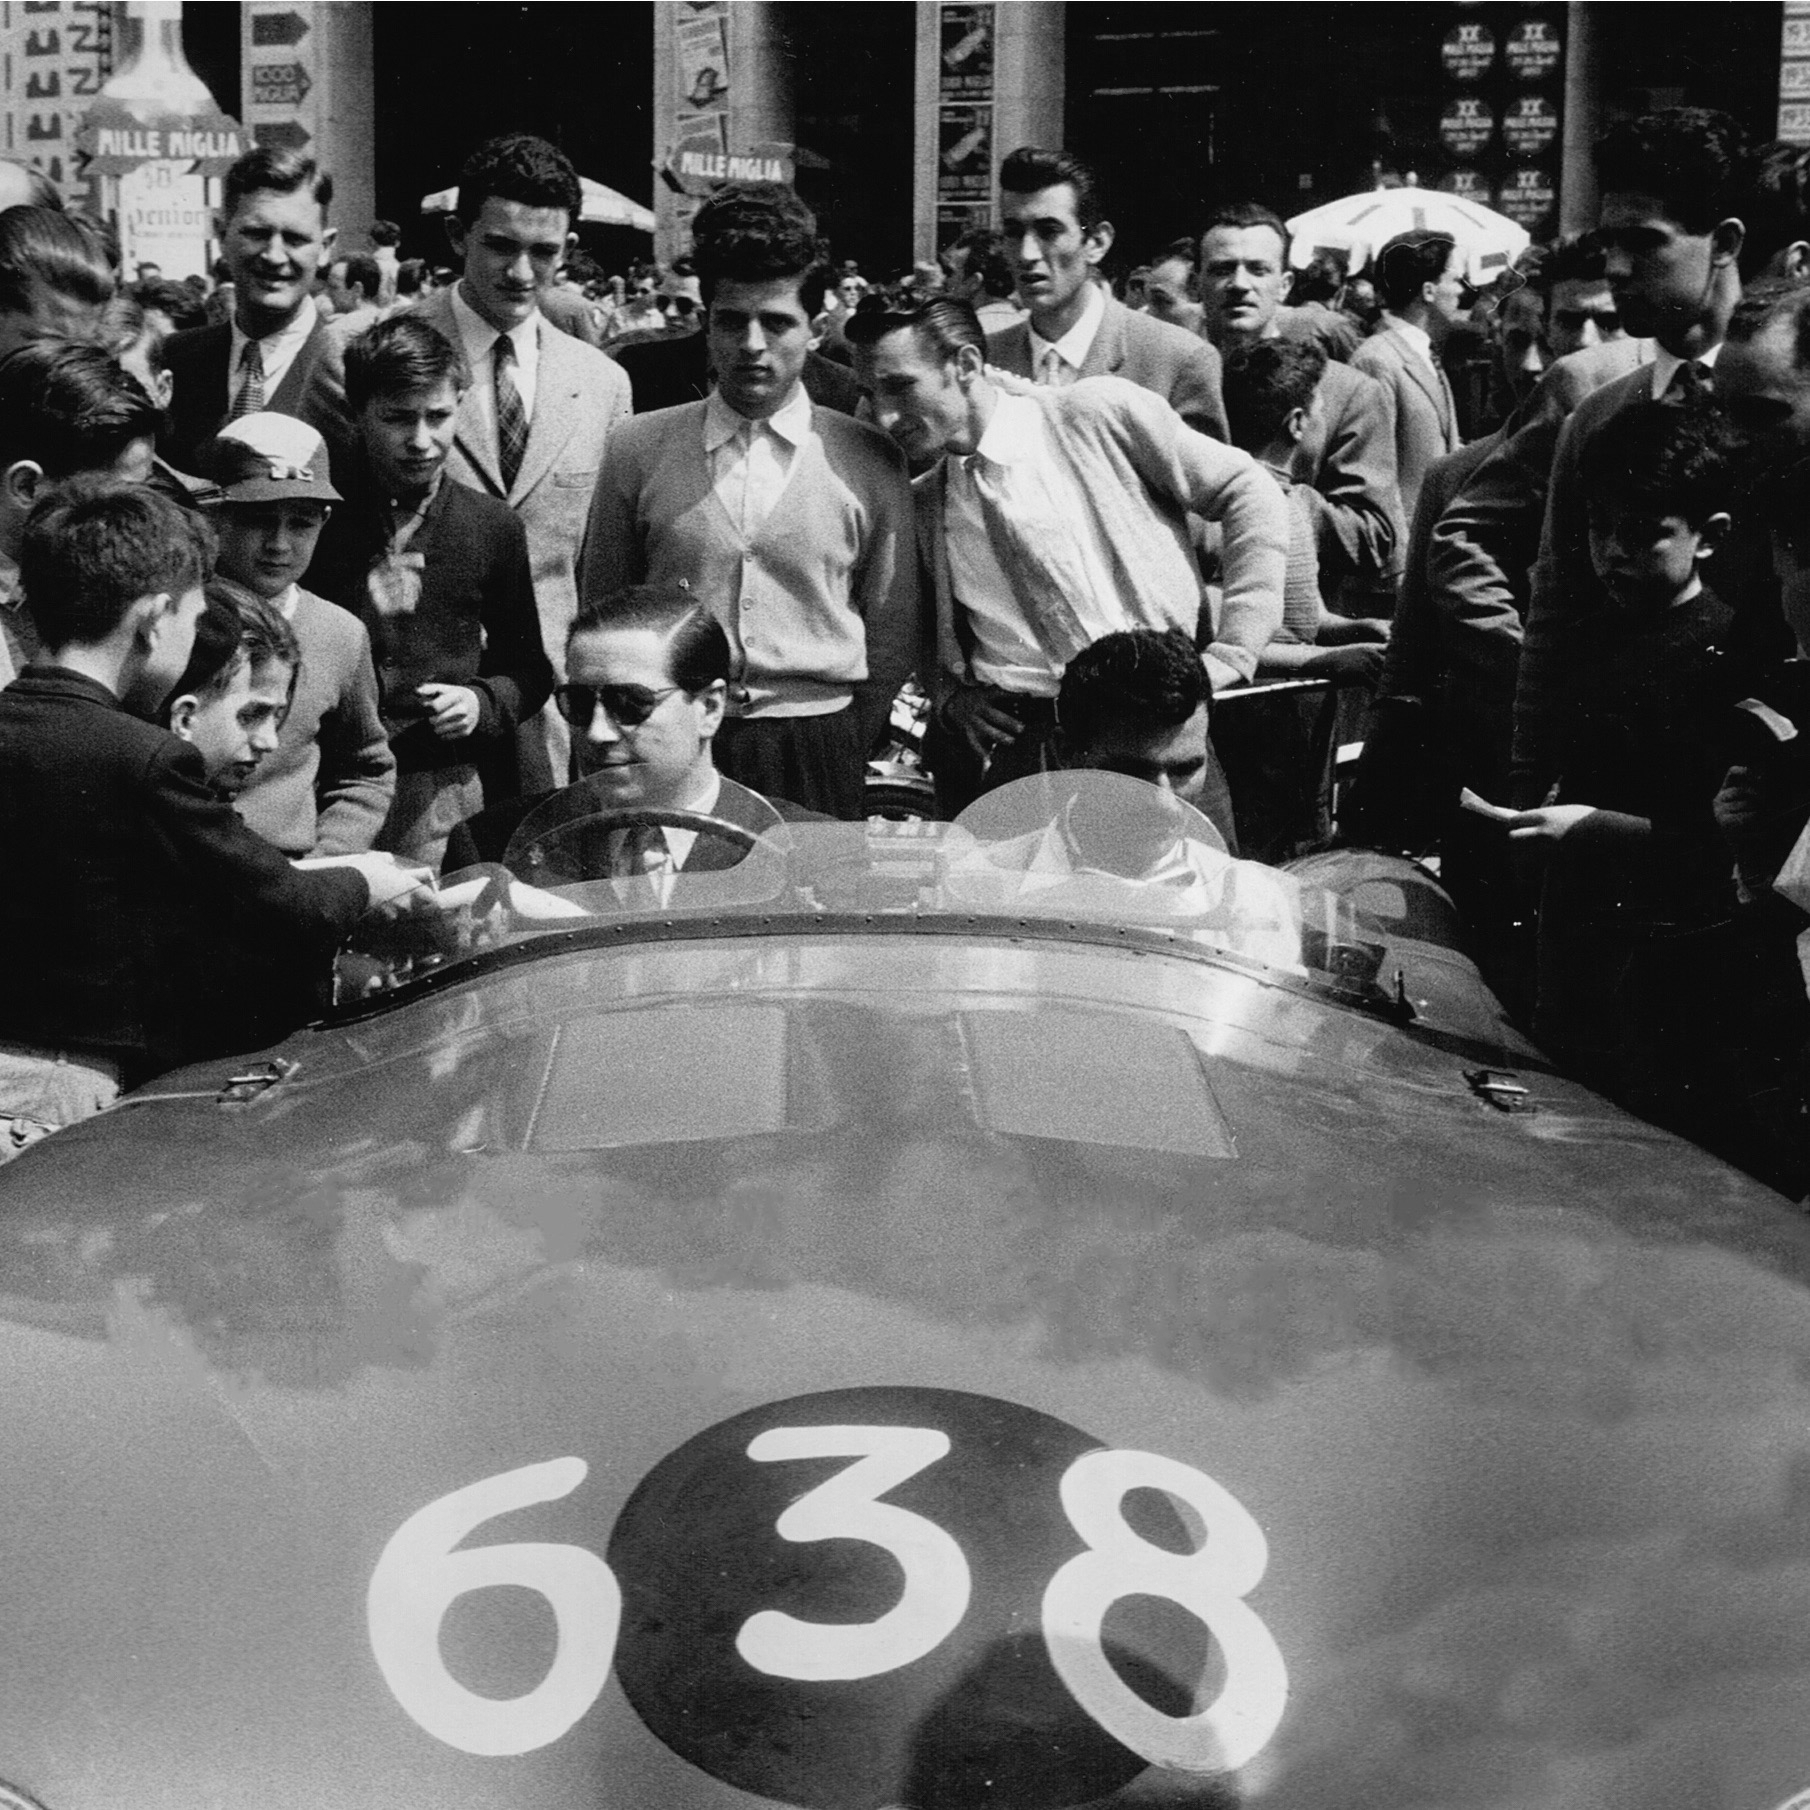 Tony Rolt & Len Hayden - 1955 Mille Miglia